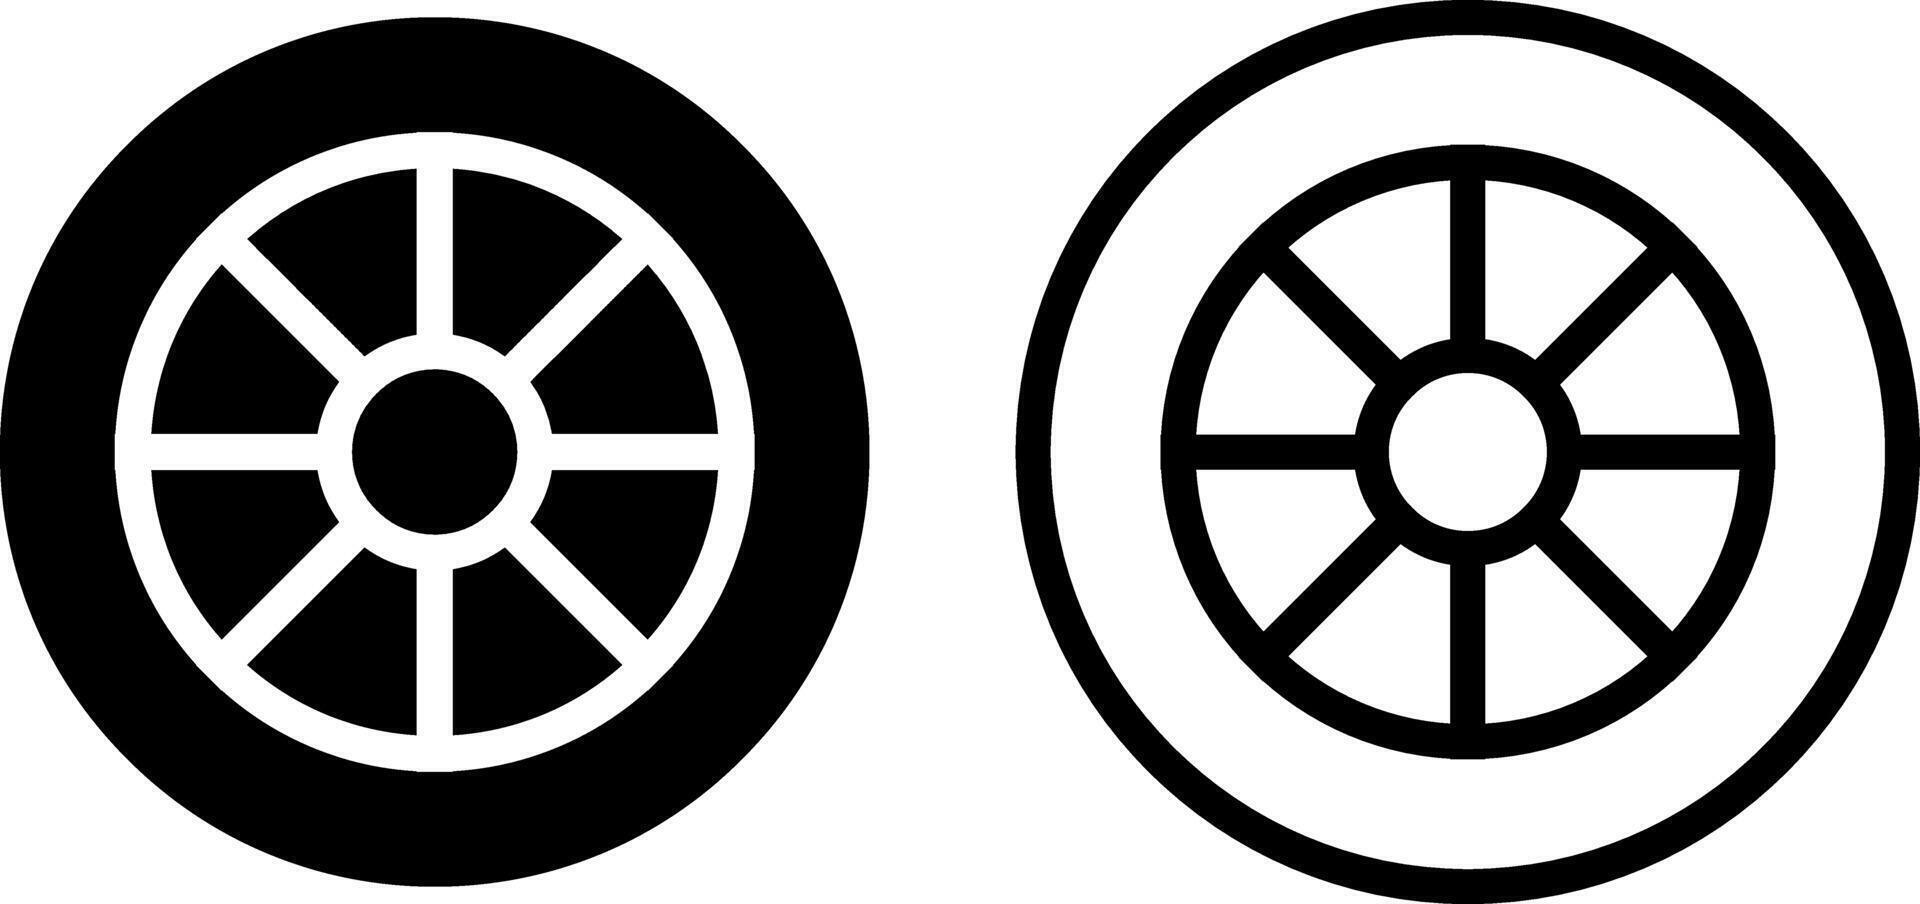 hjul ikon, tecken, eller symbol i glyf och linje stil isolerat på transparent bakgrund. vektor illustration